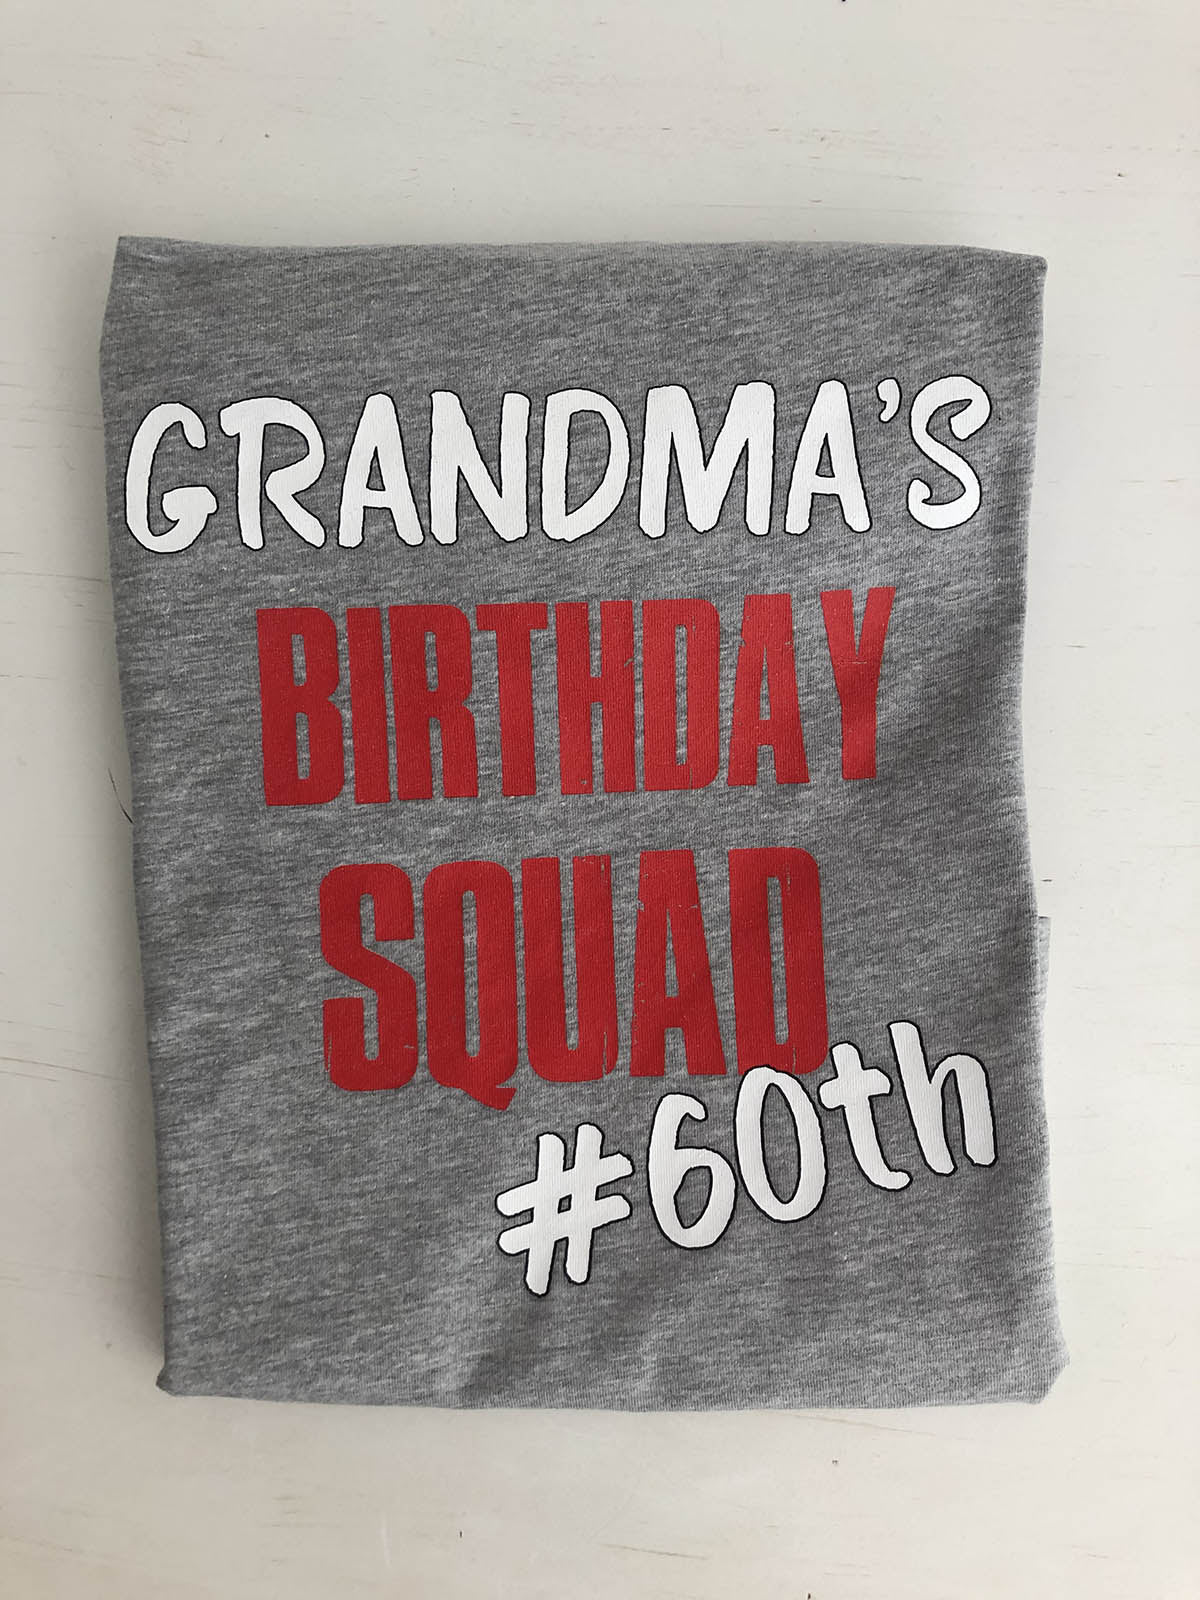 Grandma's Birthday Squad T-shirt